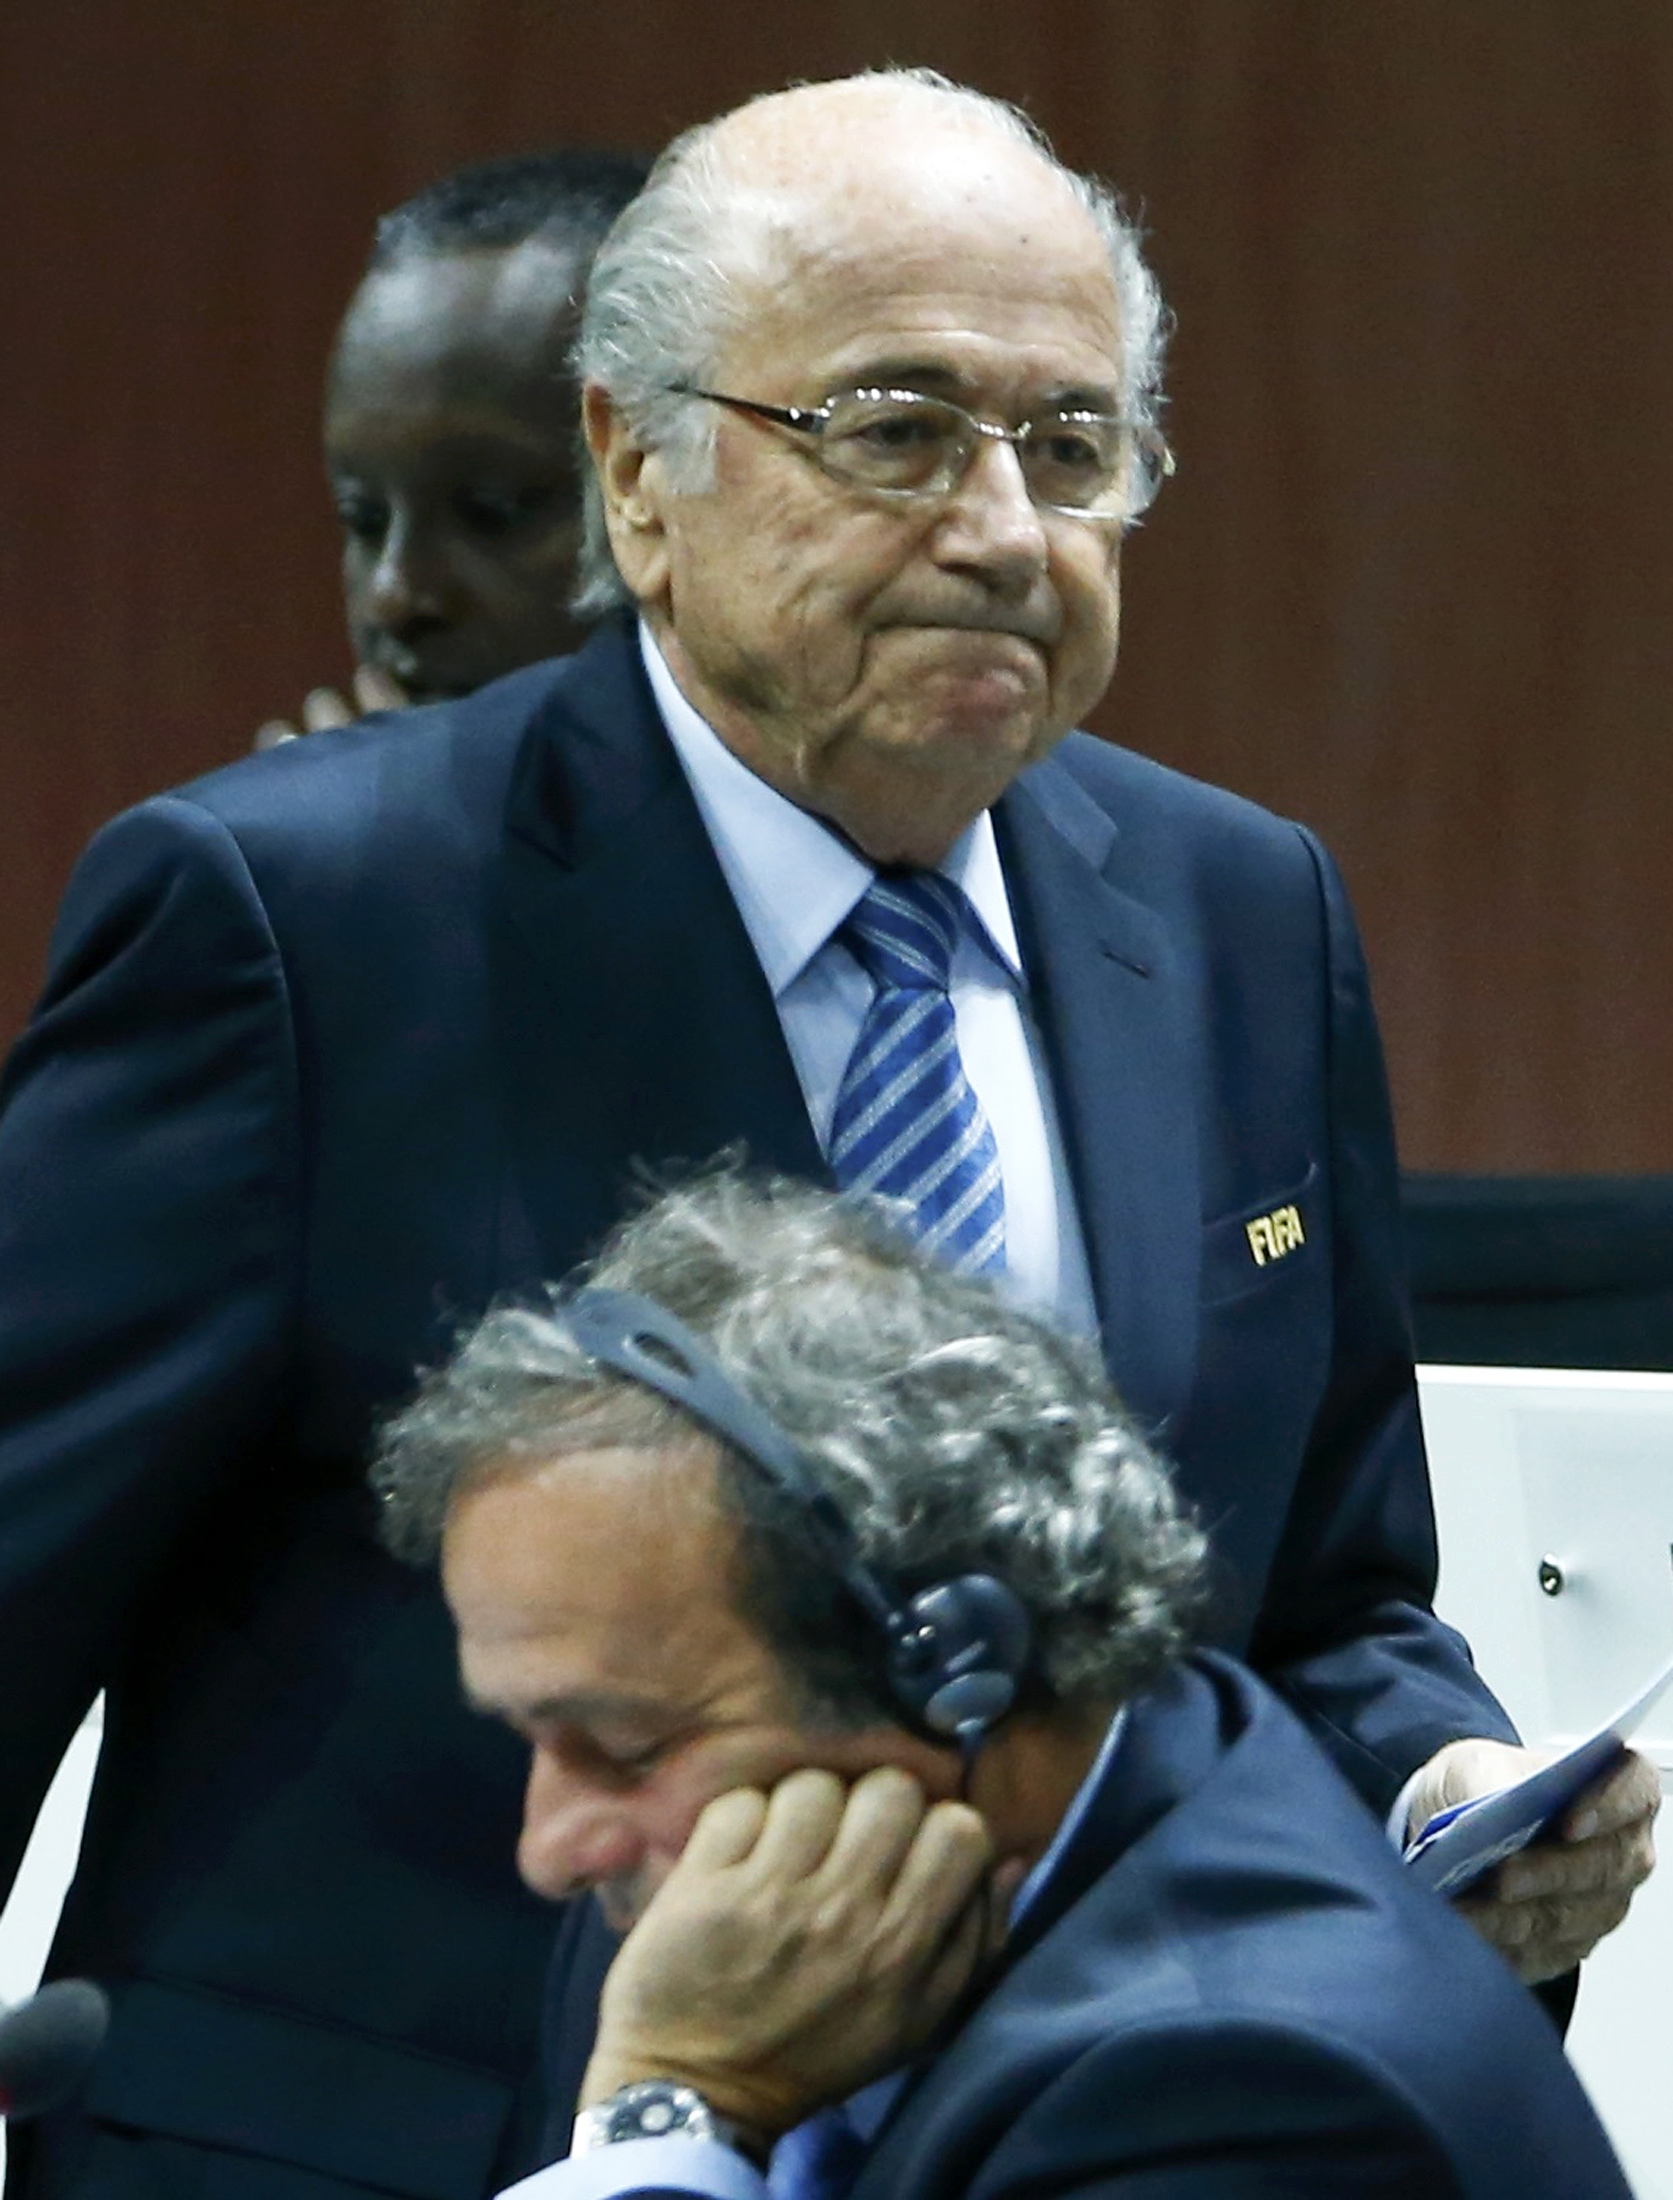 Ông Blatter (đứng sau) và ông Platini cùng nhận án cấm hoạt động bóng đá 8 năm - Ảnh: Reuters